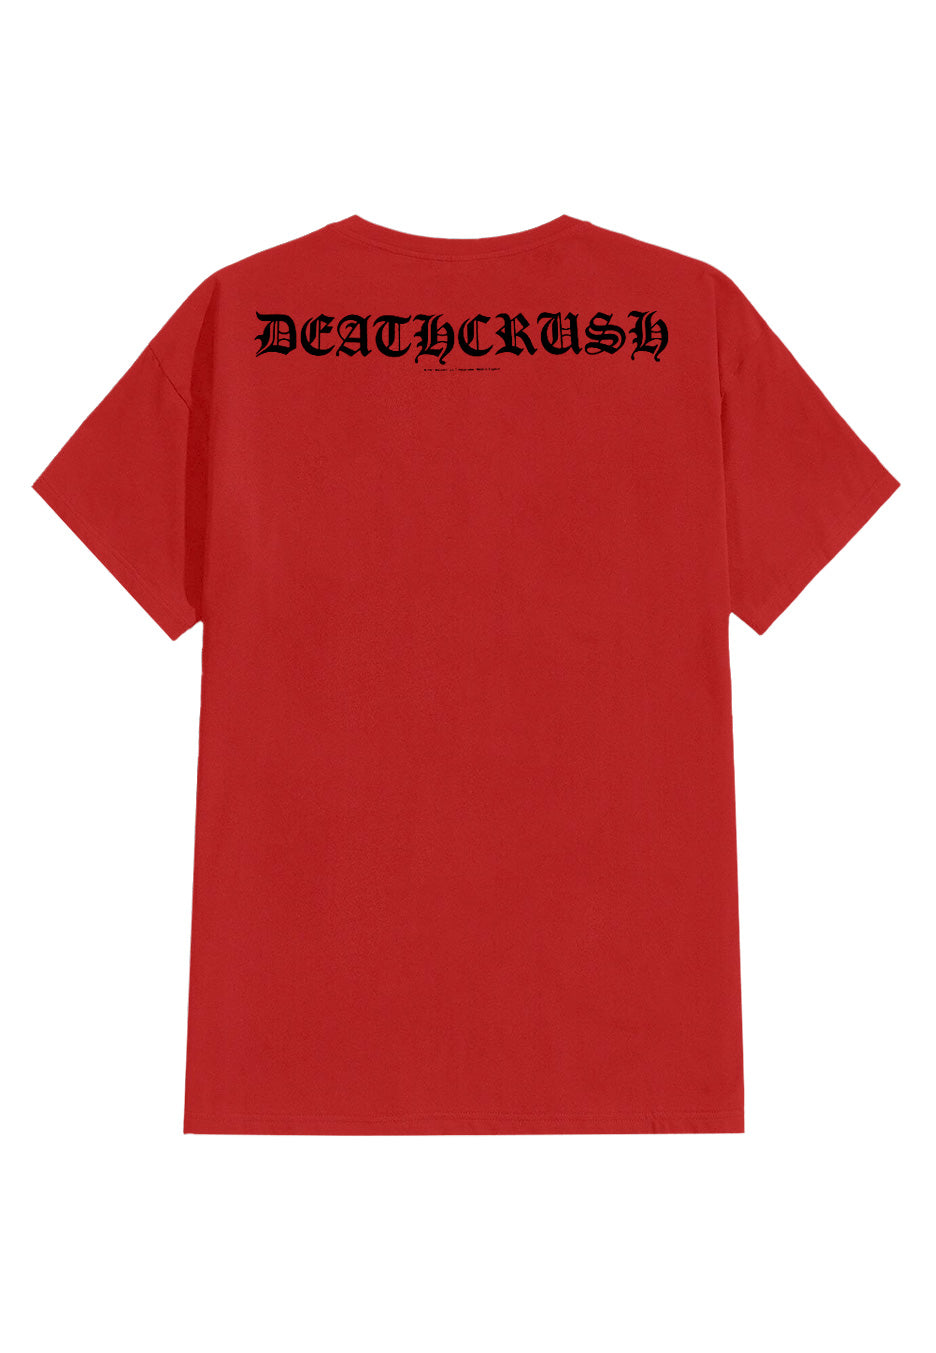 Mayhem - Deathcrush Red - T-Shirt